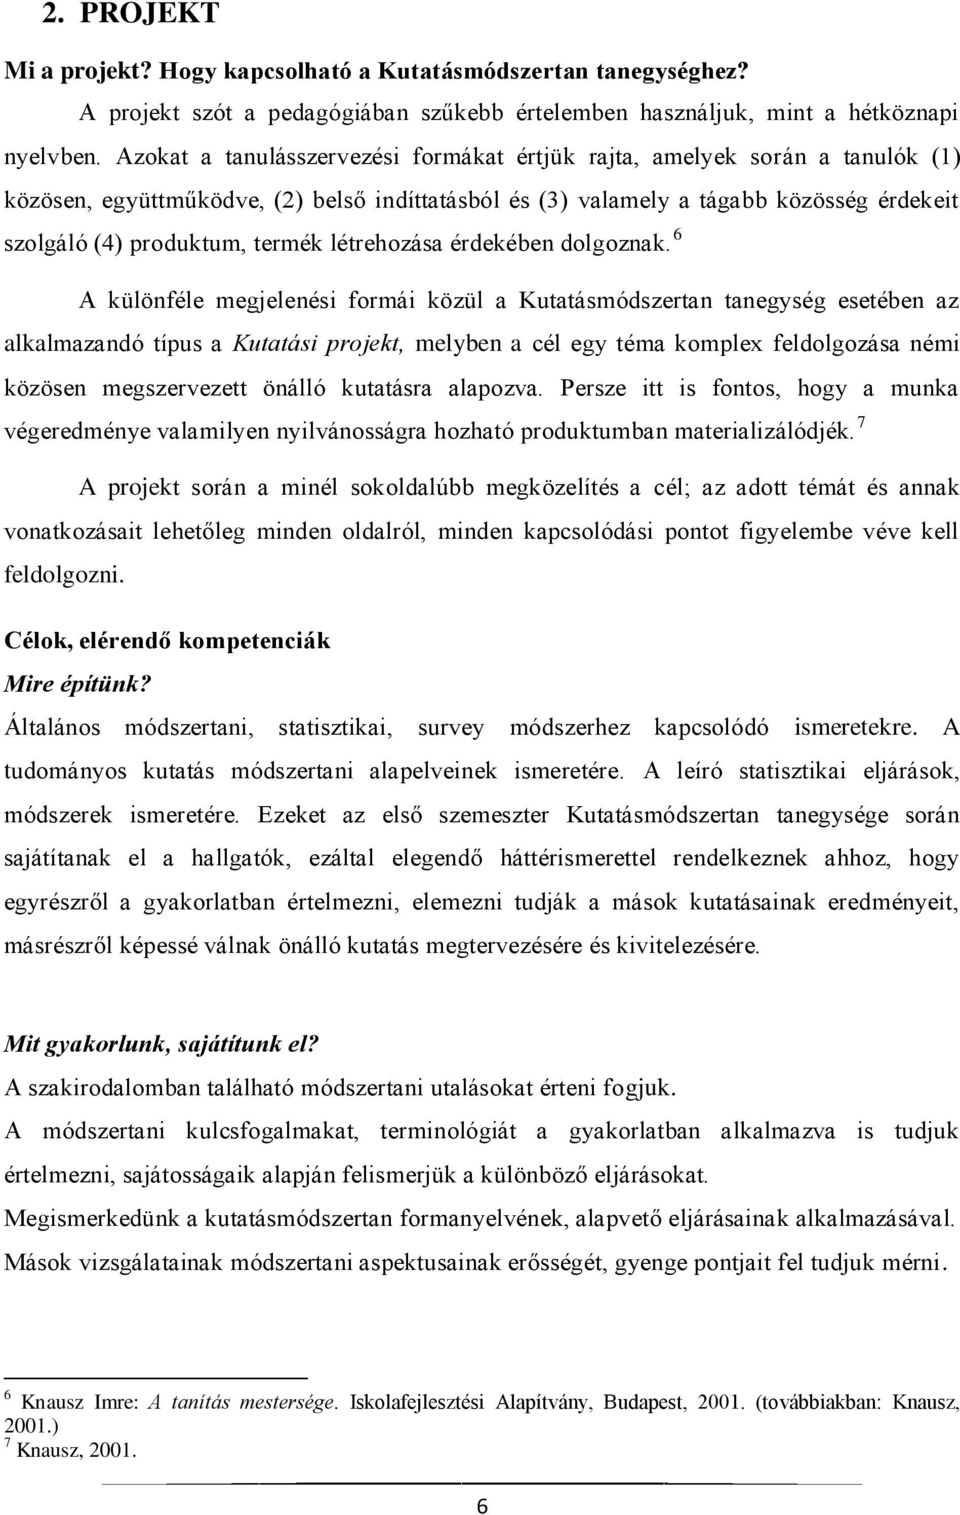 Módszertan Kutatásmódszertan II. (SBANAR2063) tárgyból a Projektpedagógia  kompetencia alapú módszer felhasználásával. - PDF Ingyenes letöltés